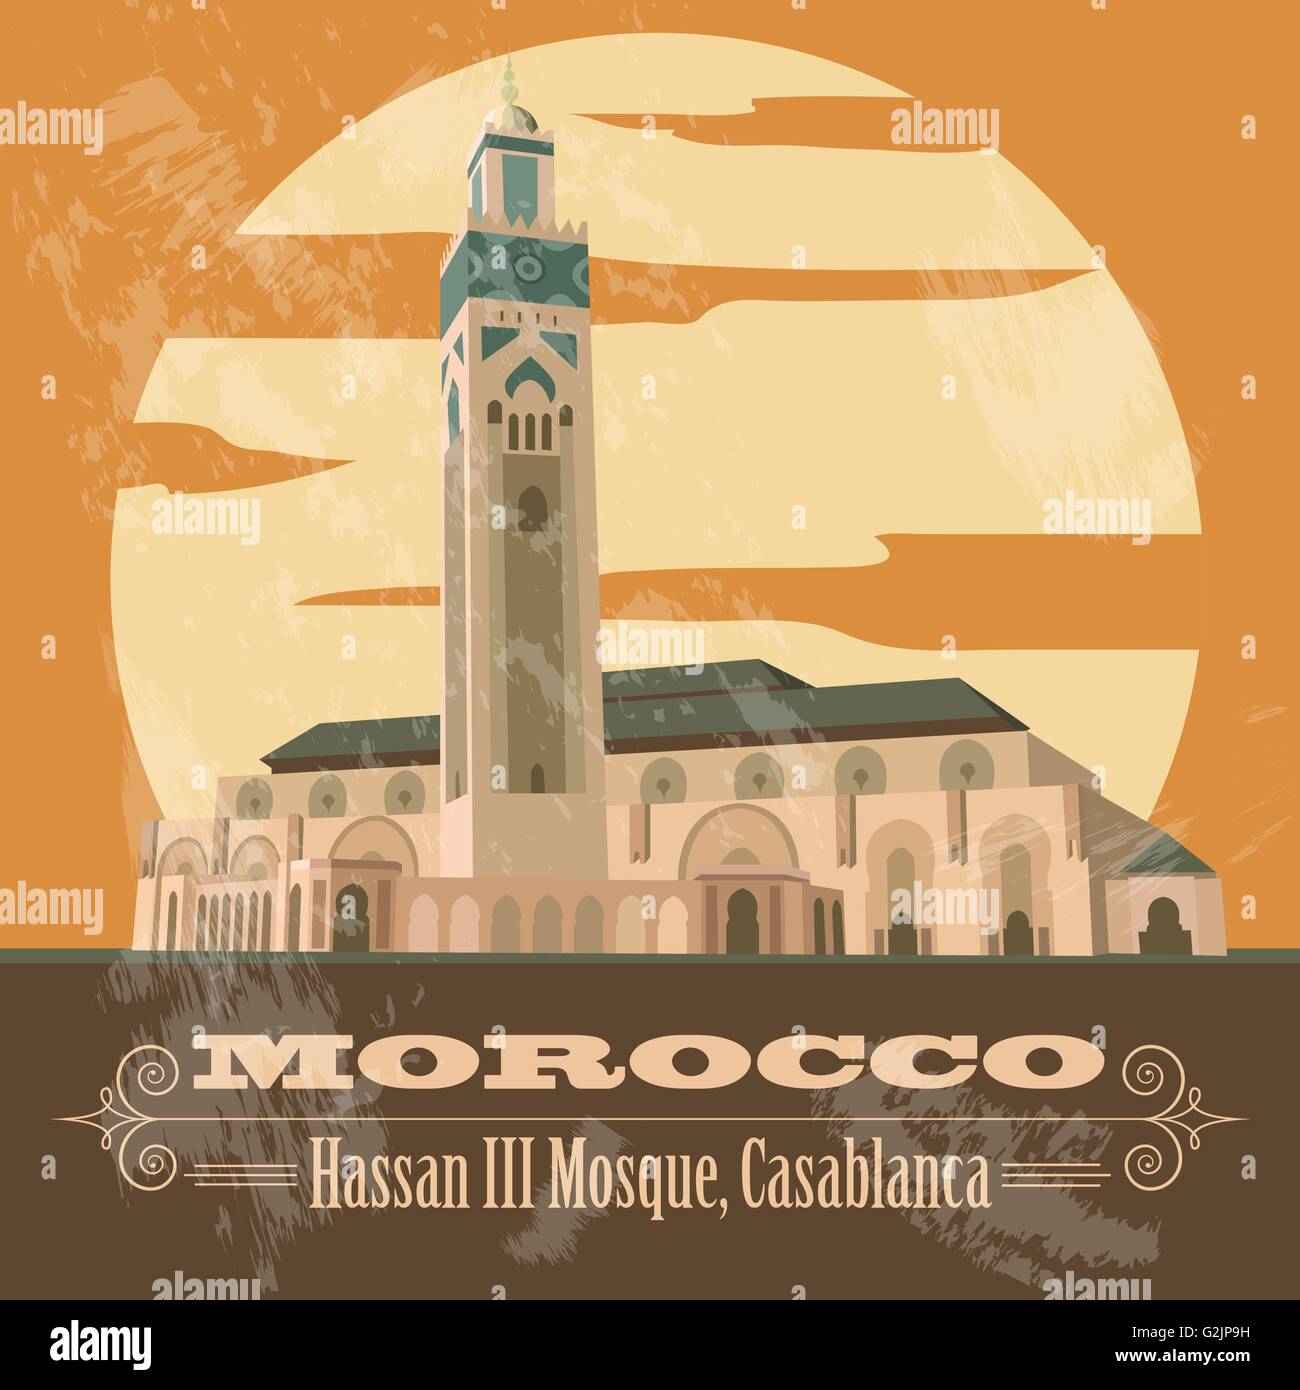 Königreich Marokko Sehenswürdigkeiten. III der Hassan-Moschee in Casablanca. Retro-Stil Bild. Vektor-illustration Stock Vektor